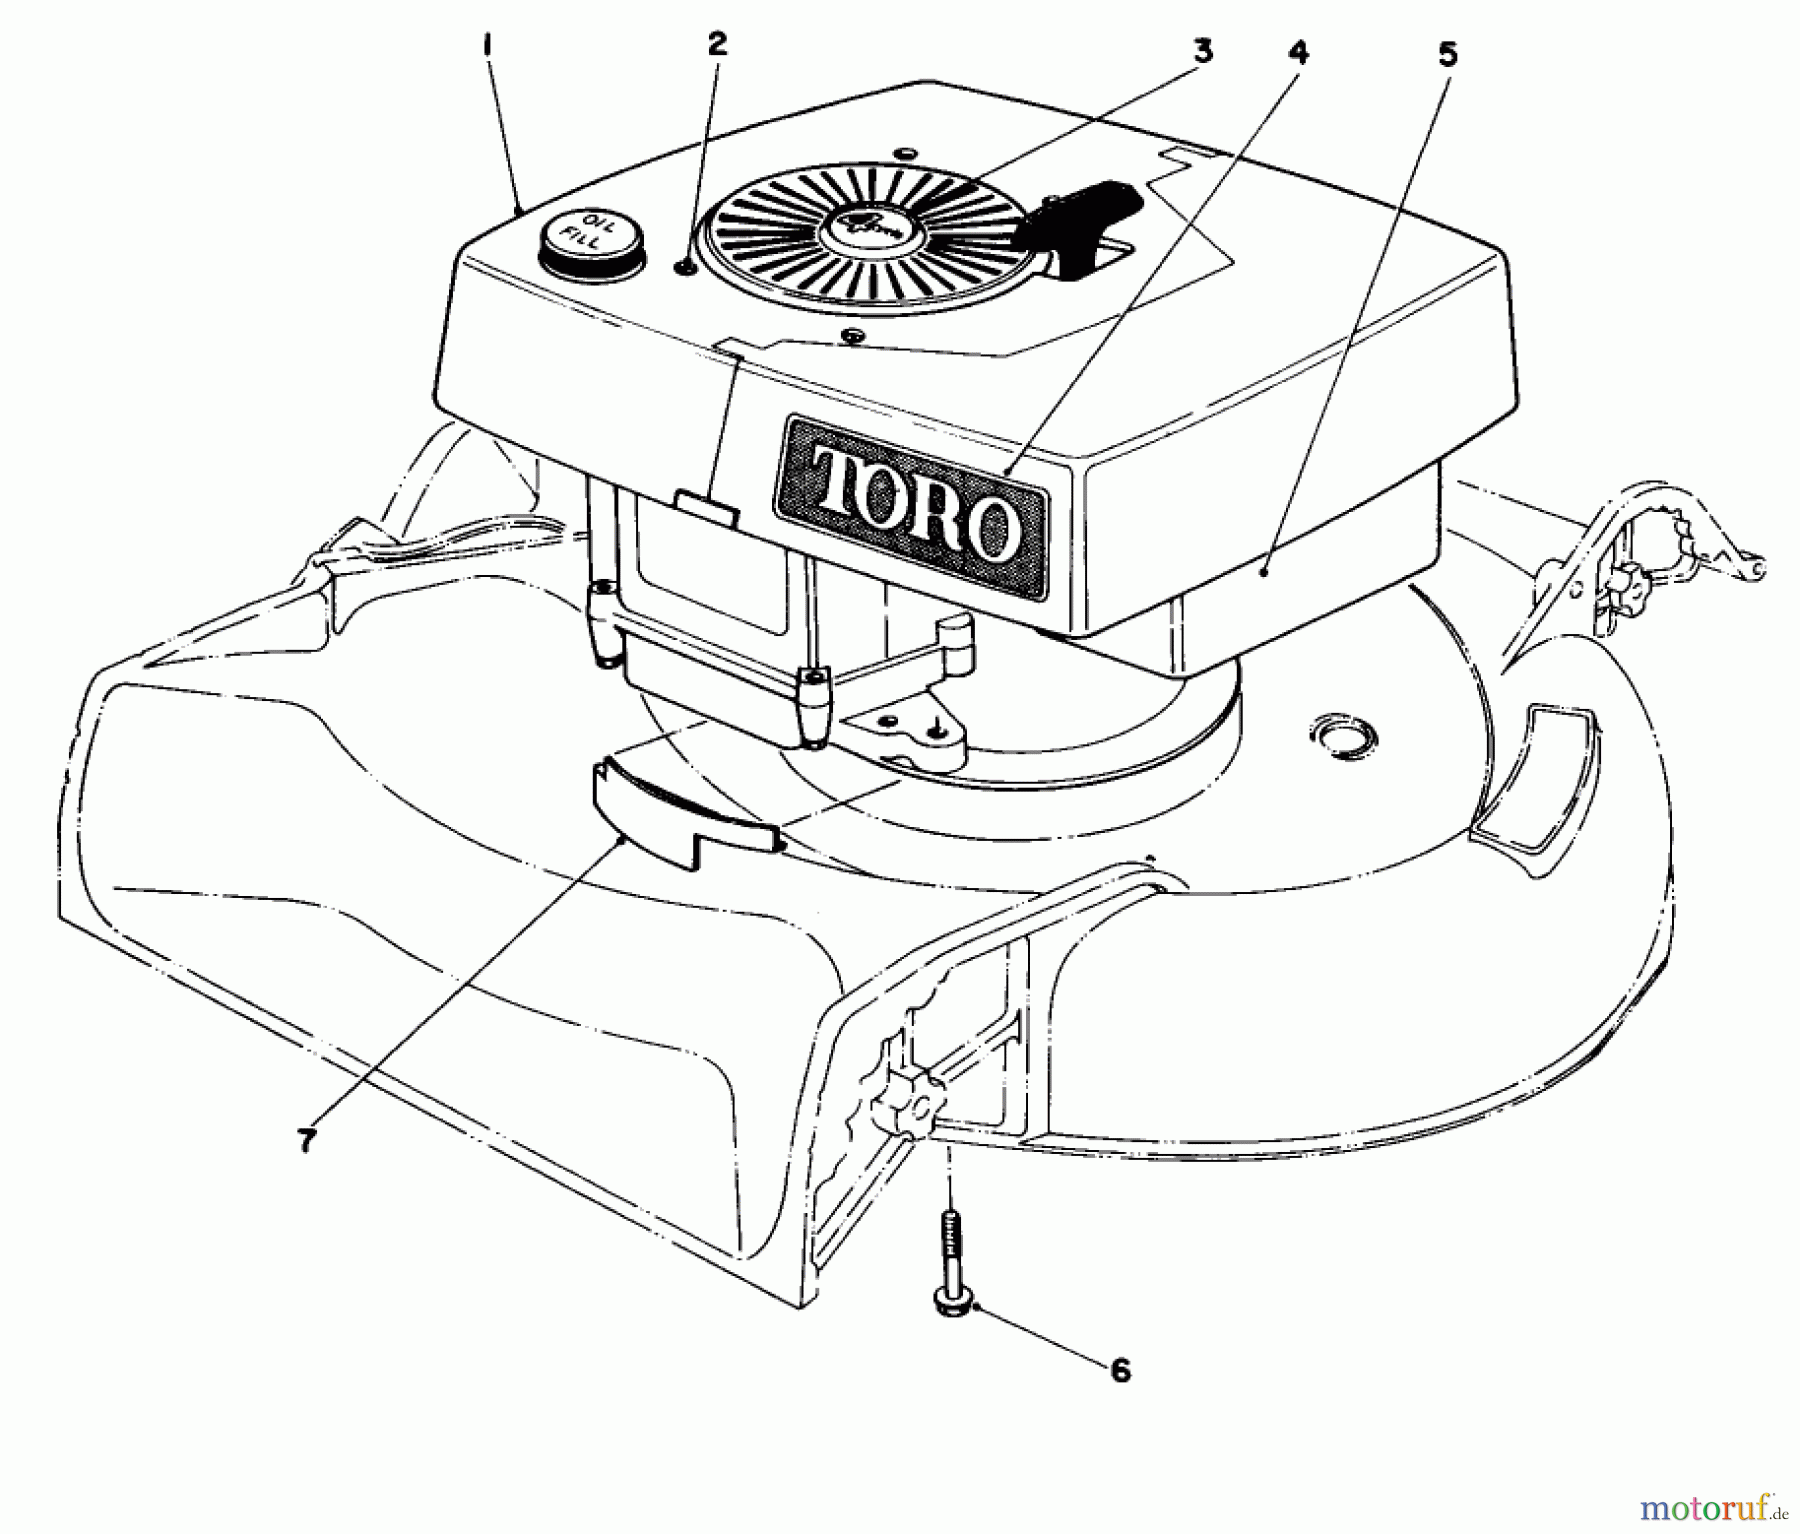  Toro Neu Mowers, Walk-Behind Seite 1 16310 - Toro Lawnmower, 1982 (2000001-2999999) ENGINE ASSEMBLY